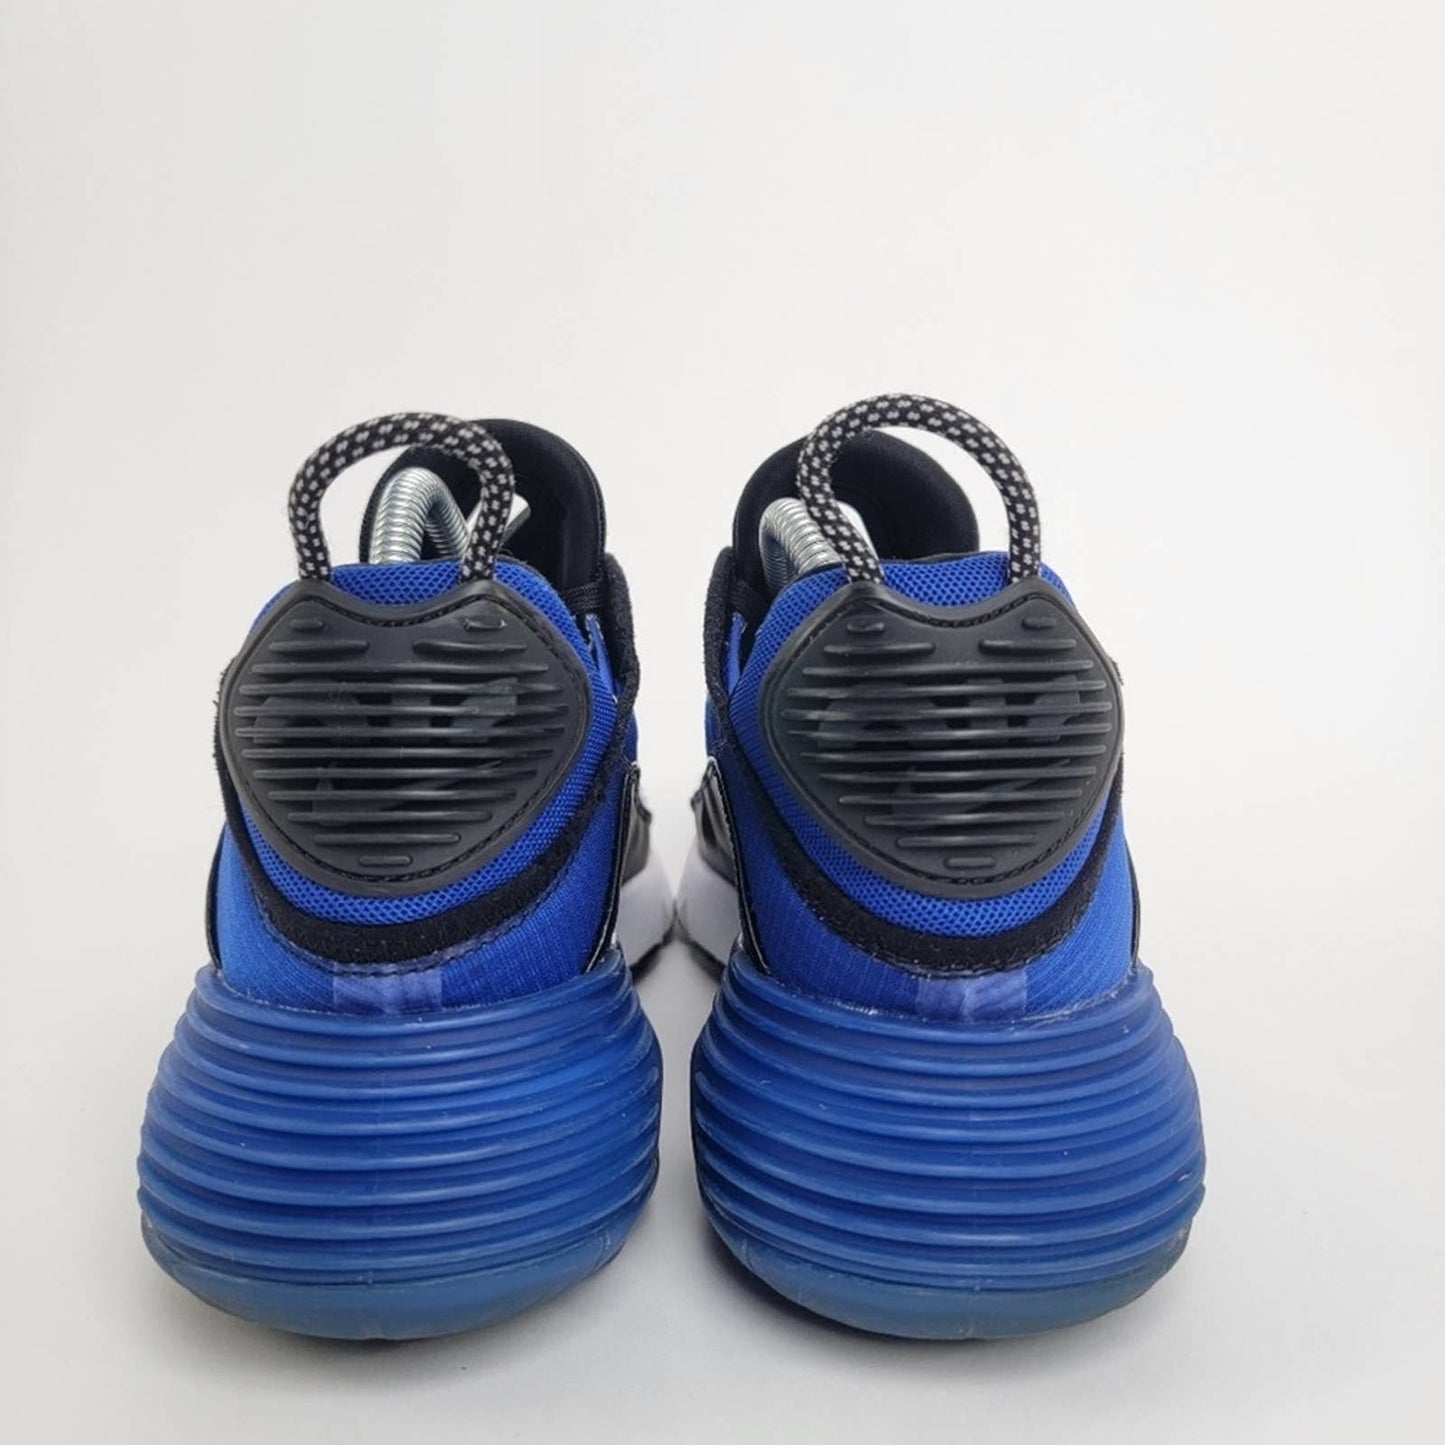 Nike Air Max 2090 'Hyper Blue' - 9/10.5